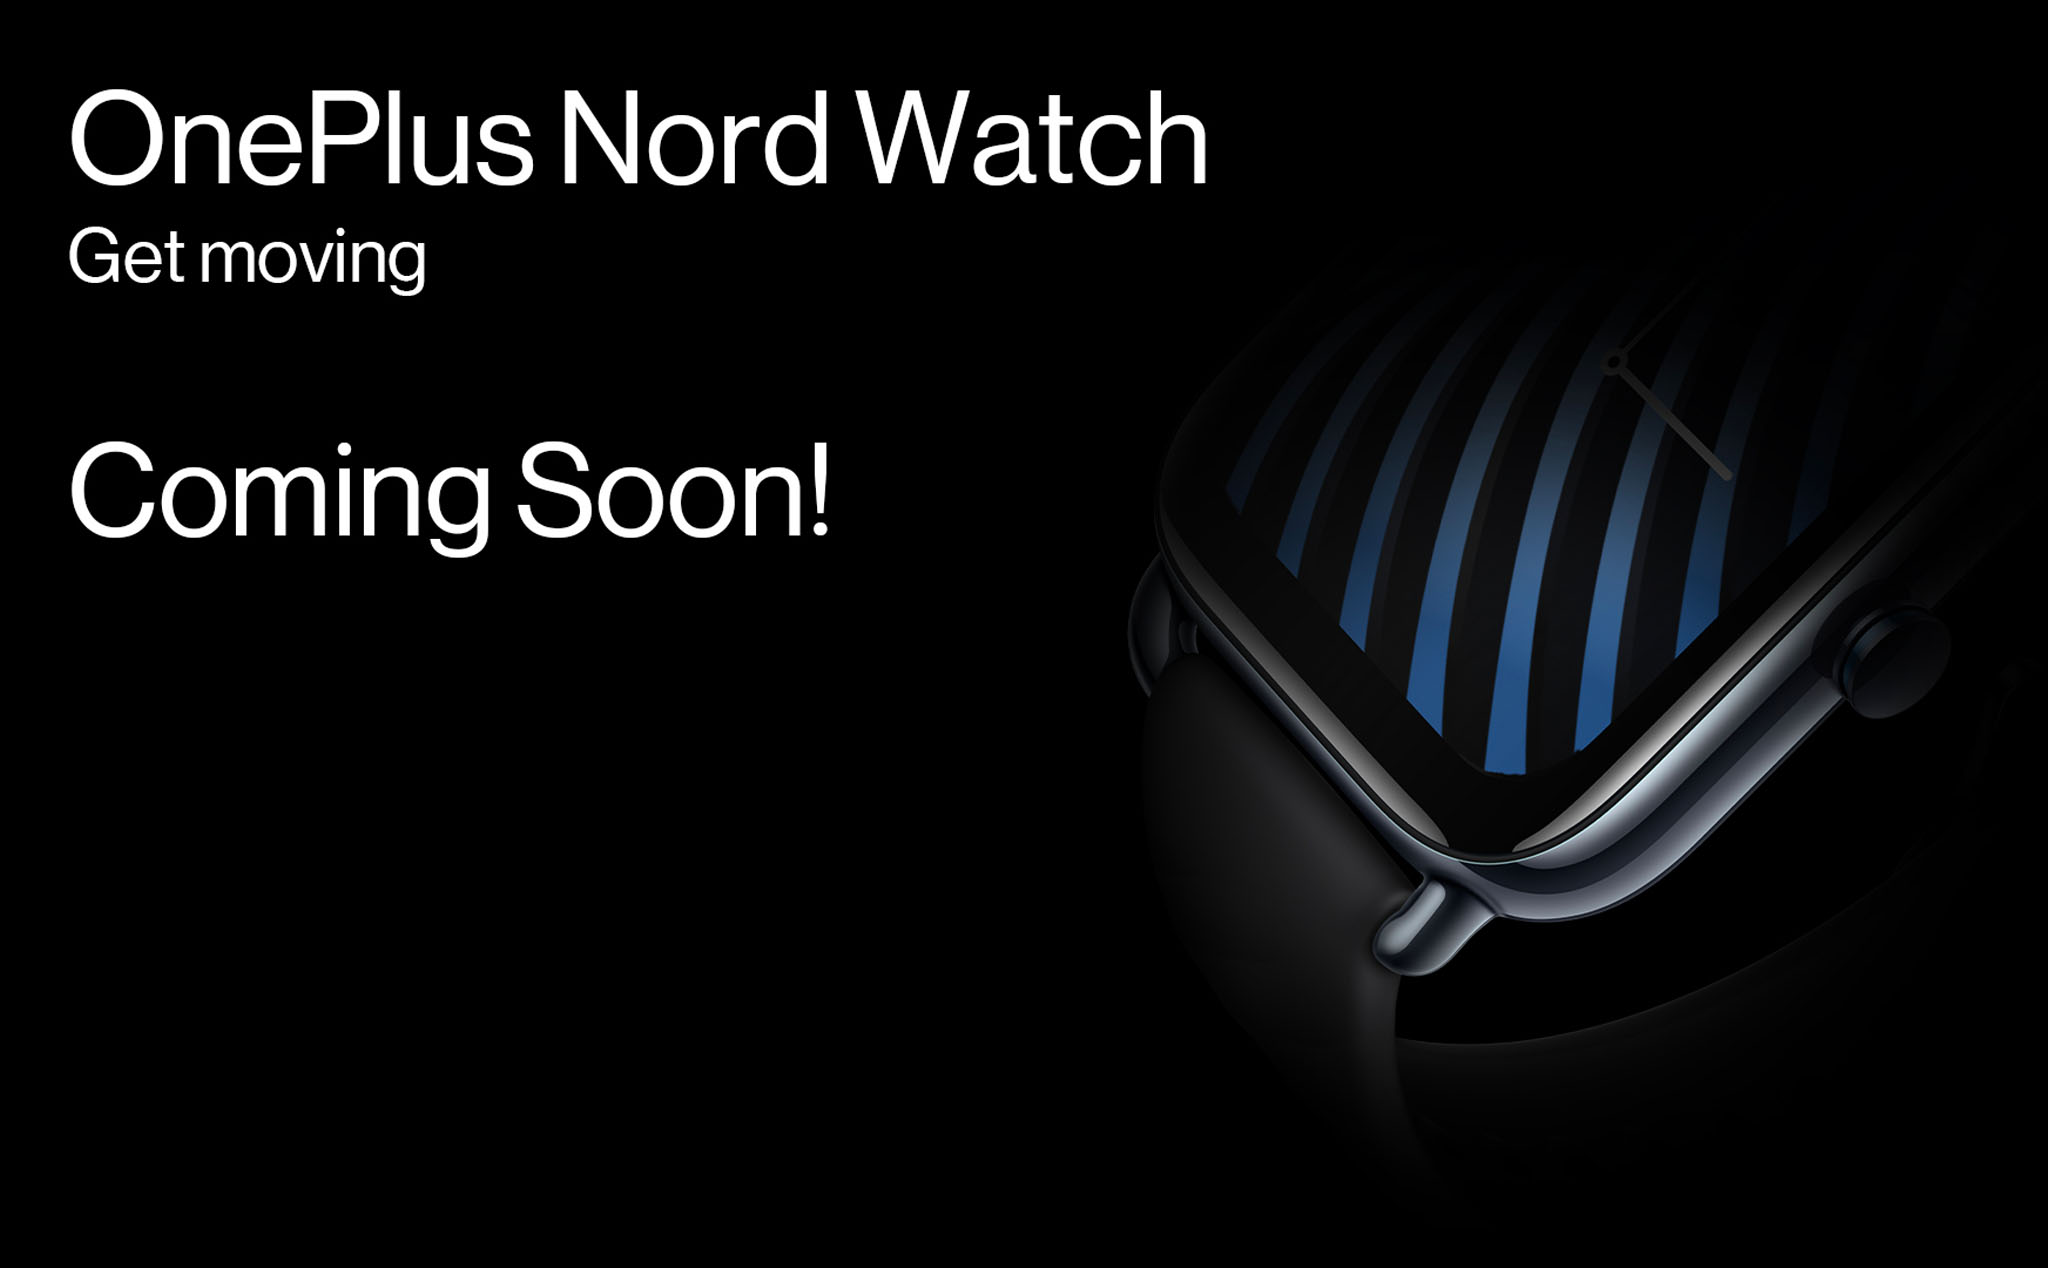 OnePlus Nord Watch: Màn hình AMOLED, có always-on display, giá bán tương đương 1,5 triệu đồng?